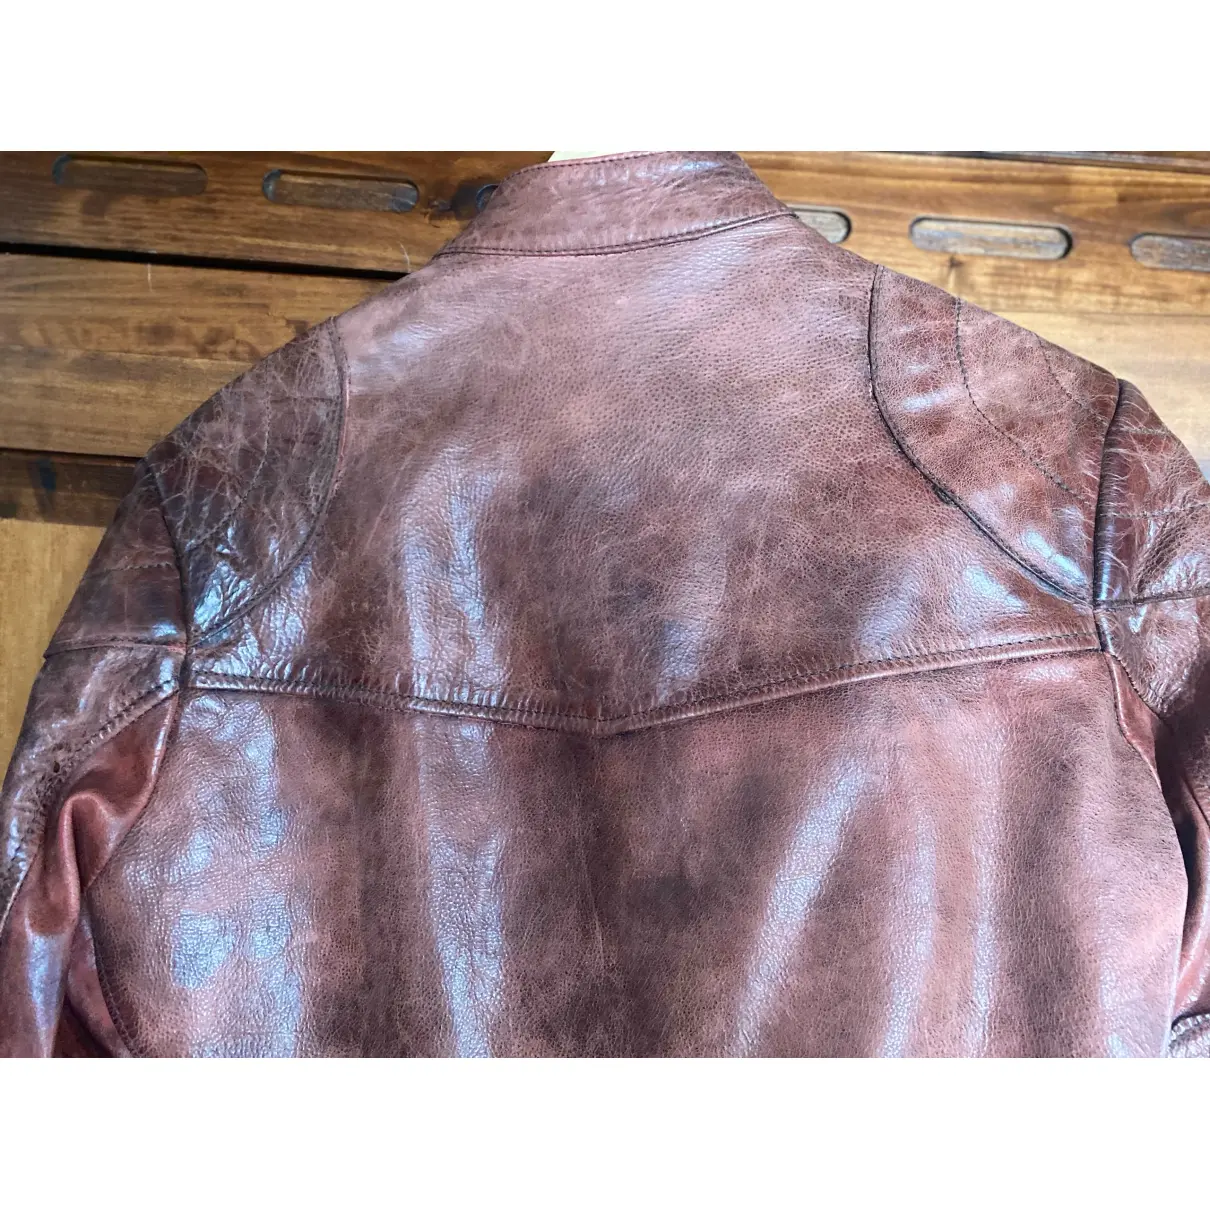 Luxury Belstaff Leather jackets Women